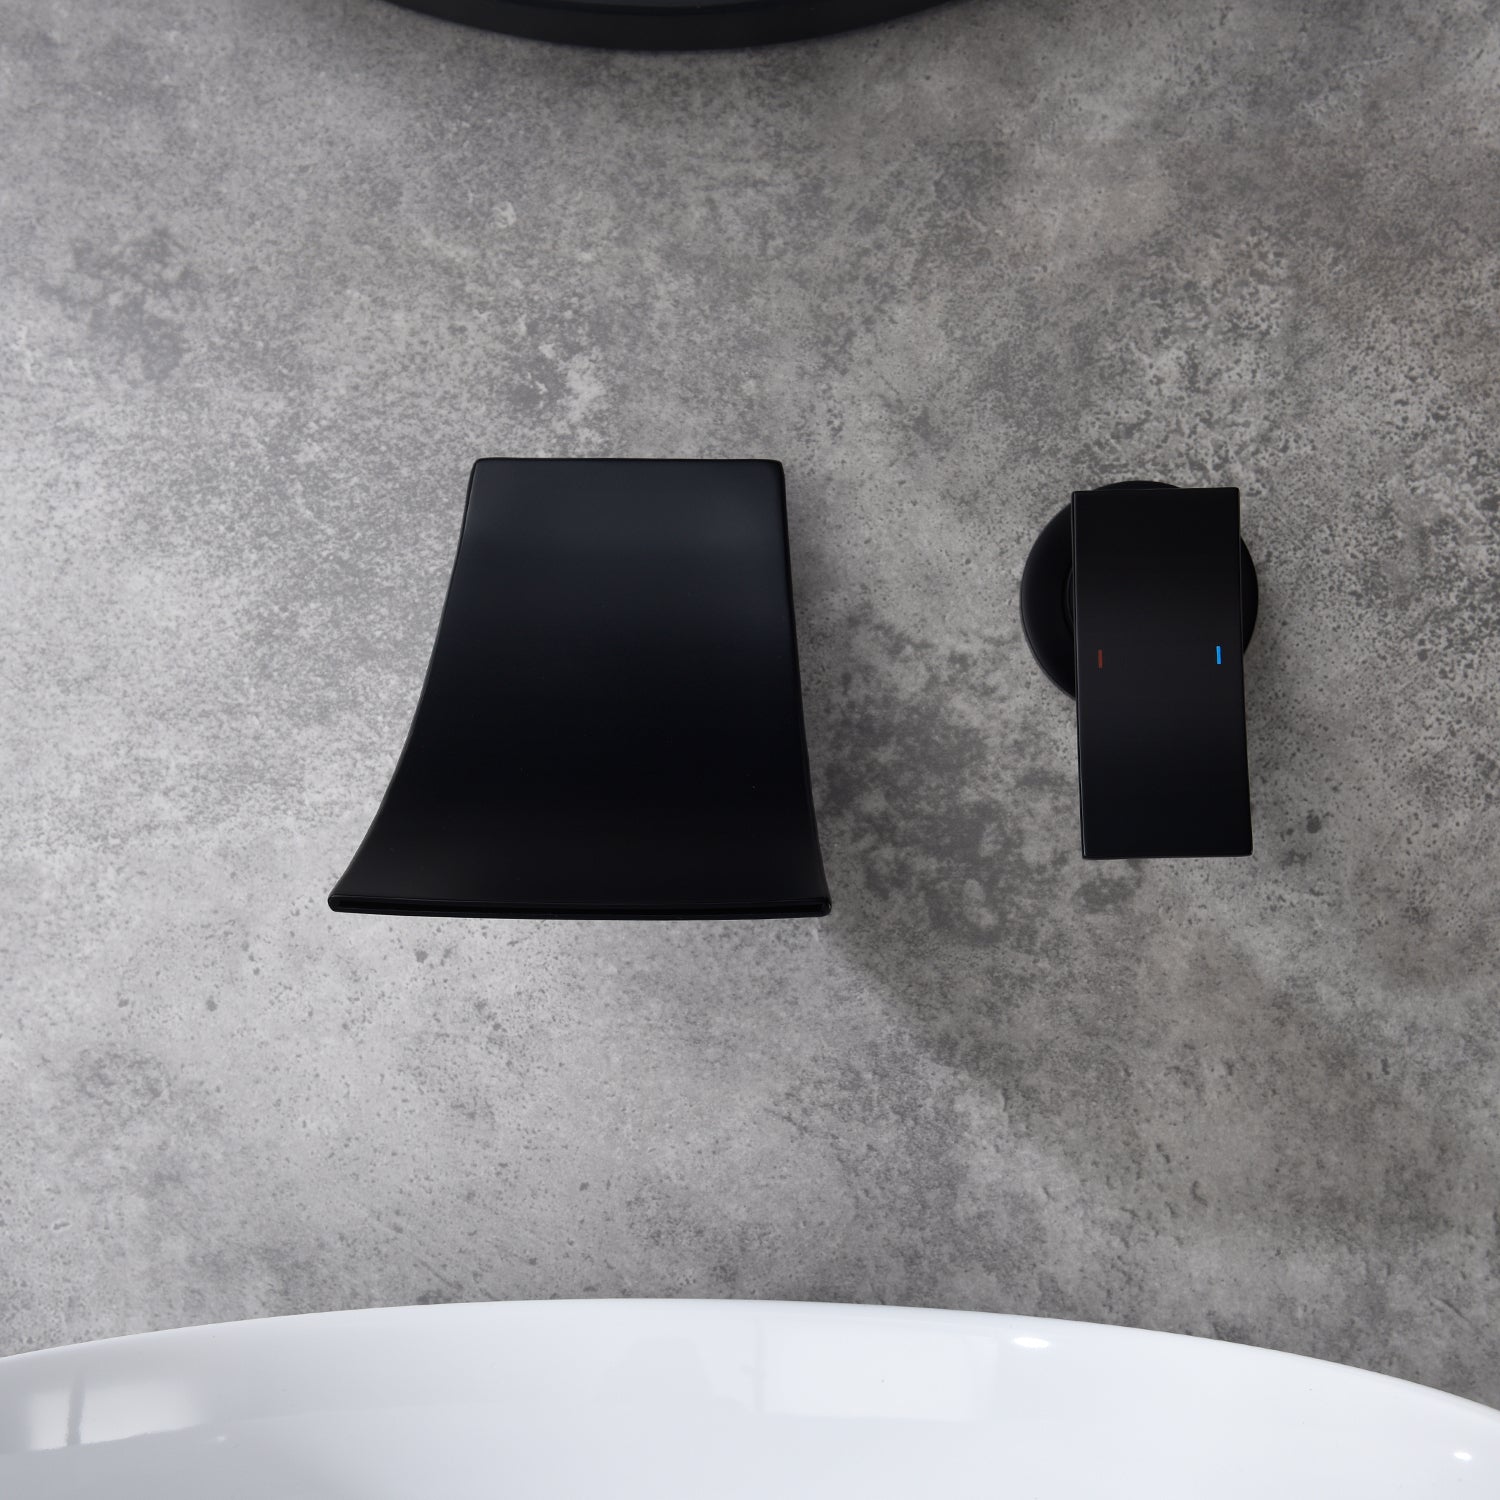 Wall Mount Widespread Bathroom Faucet - Black